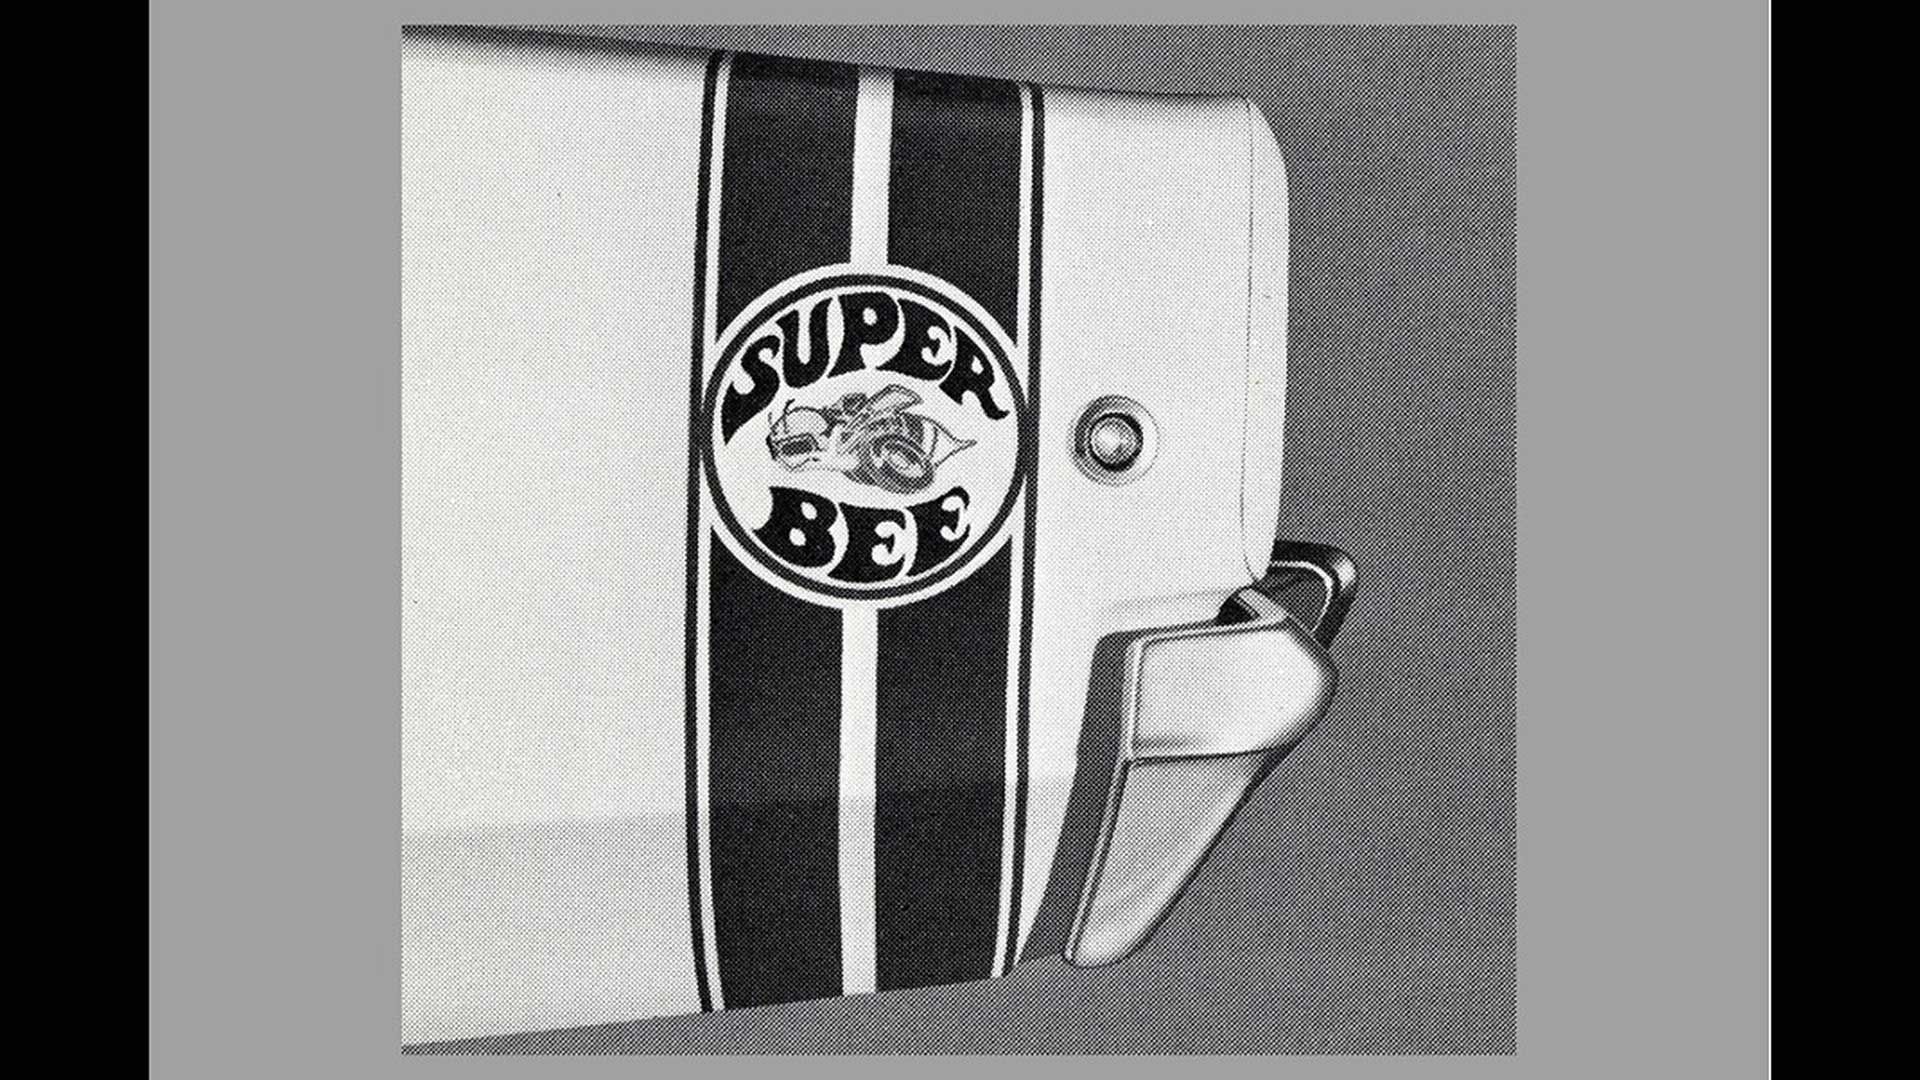 1968 Super Bee